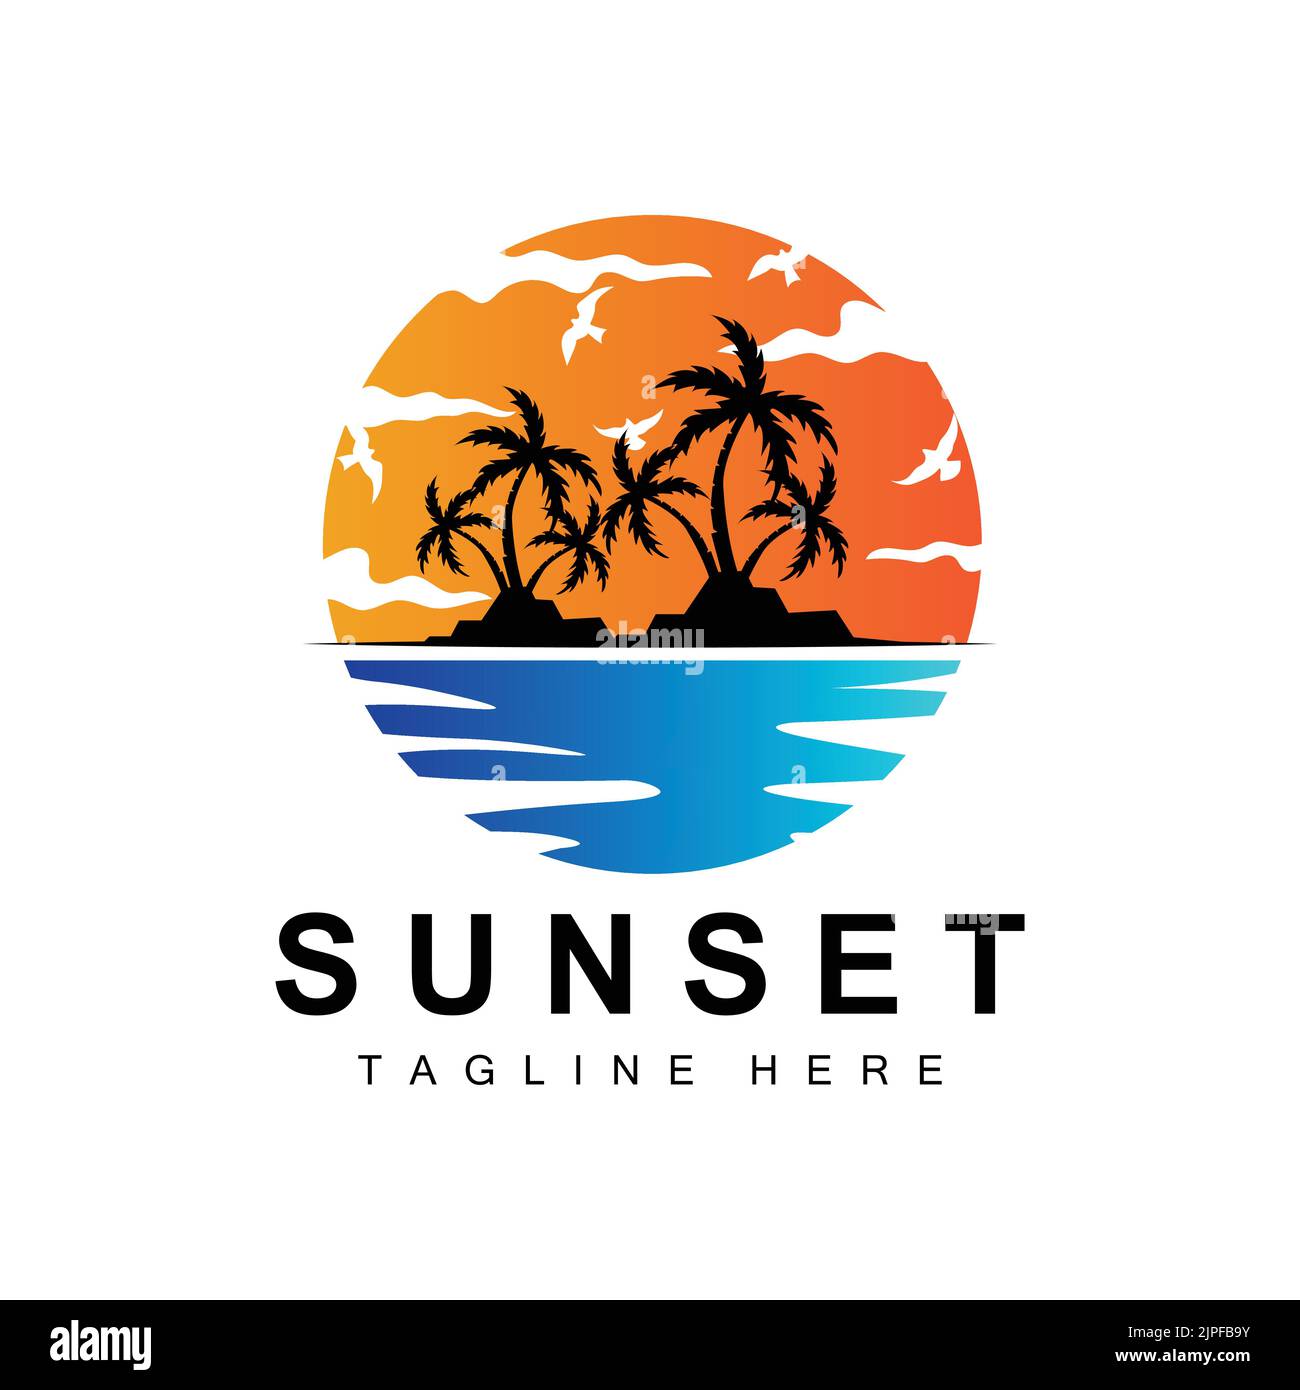 Sunset Beach Logo Design, Seascape Illustration, Red Day Vacation Spot Vector Illustrazione Vettoriale